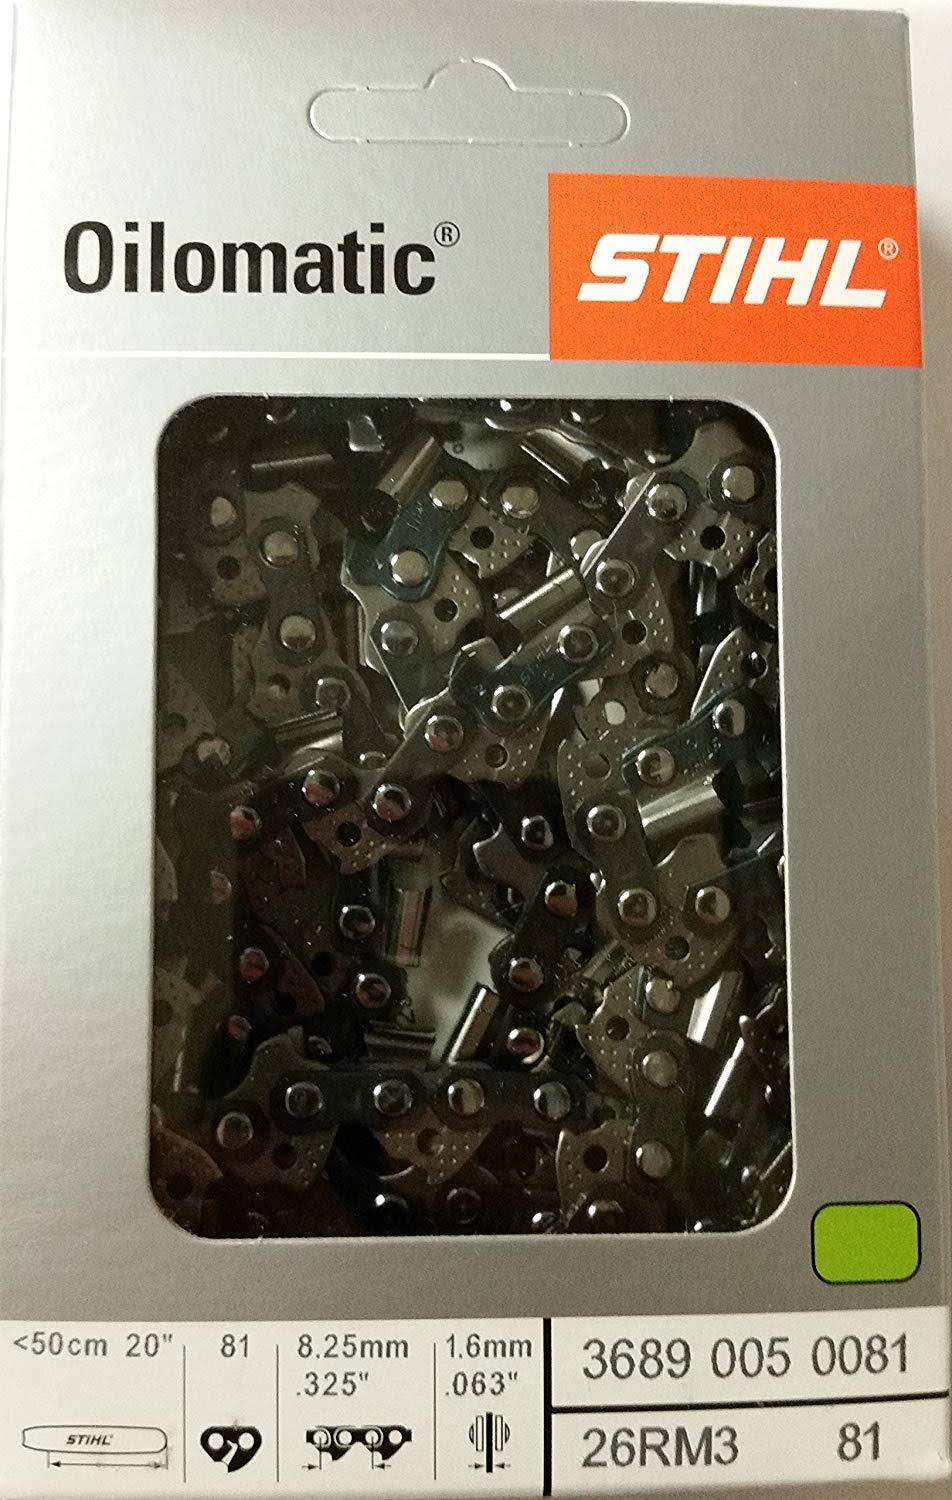 Stihl Oilomatic 26rm381 Saw Chain - 20"